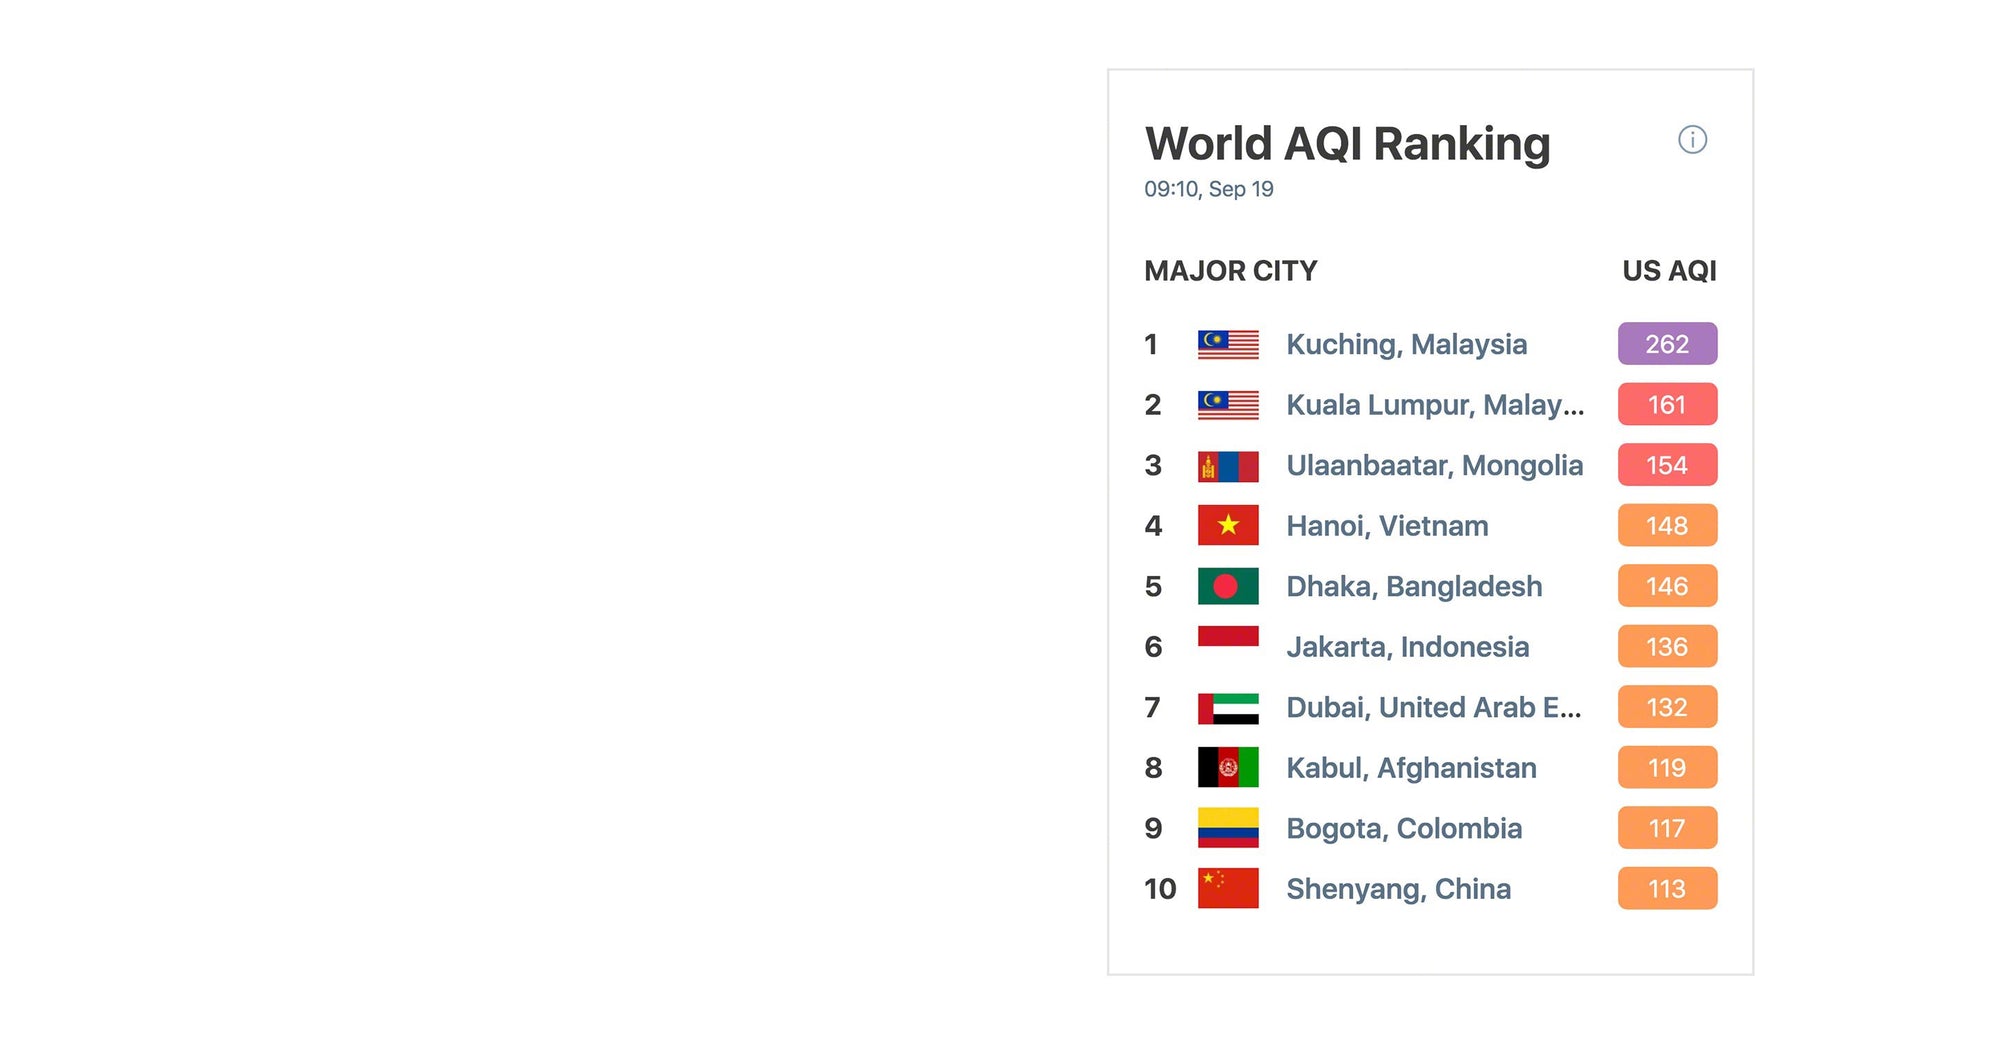 World AQI ranking